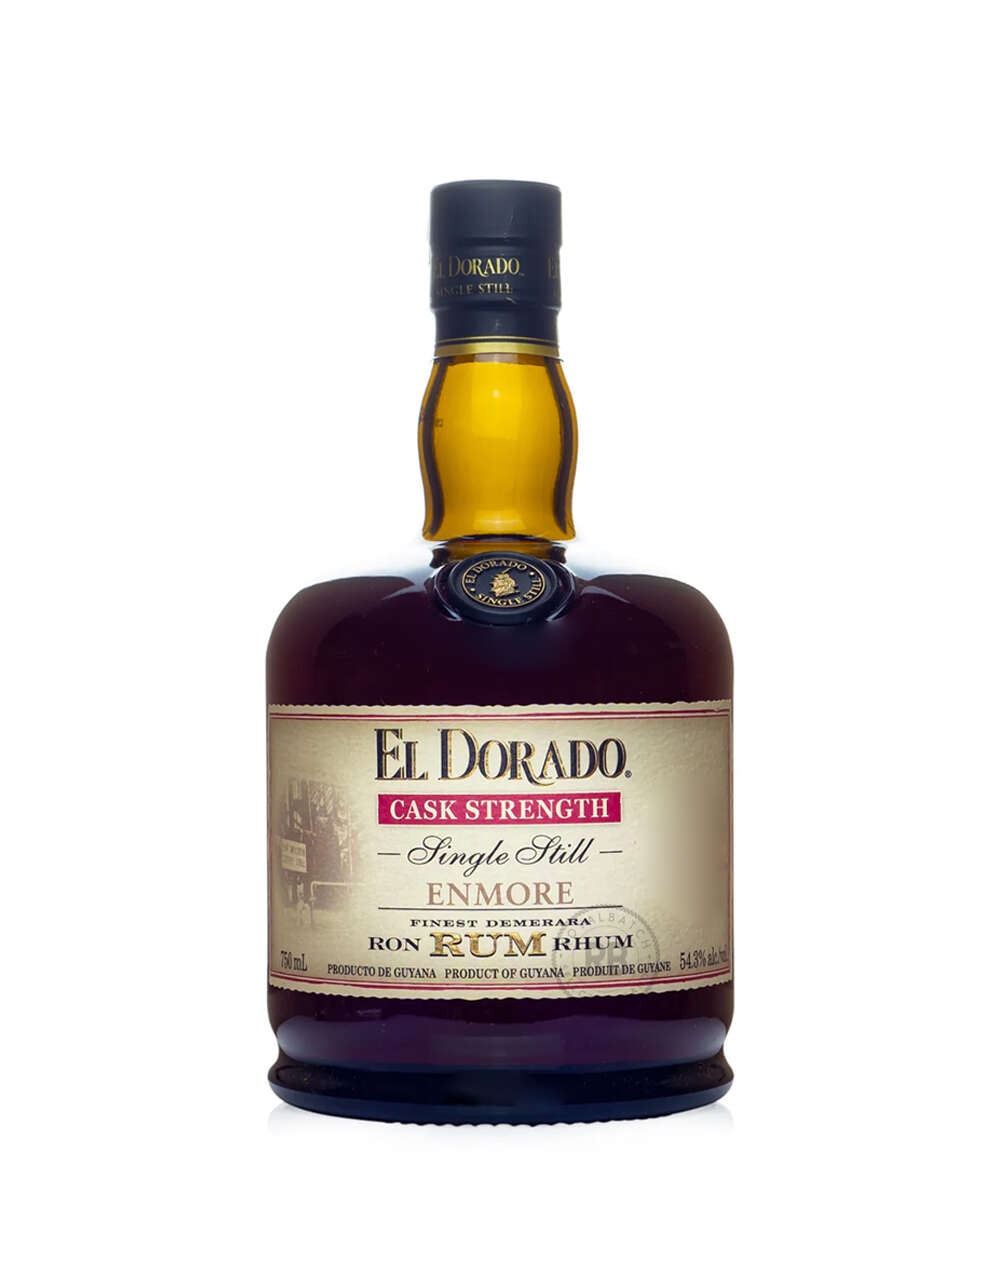 El Dorado Cask Strength Single Still Enmore Rum